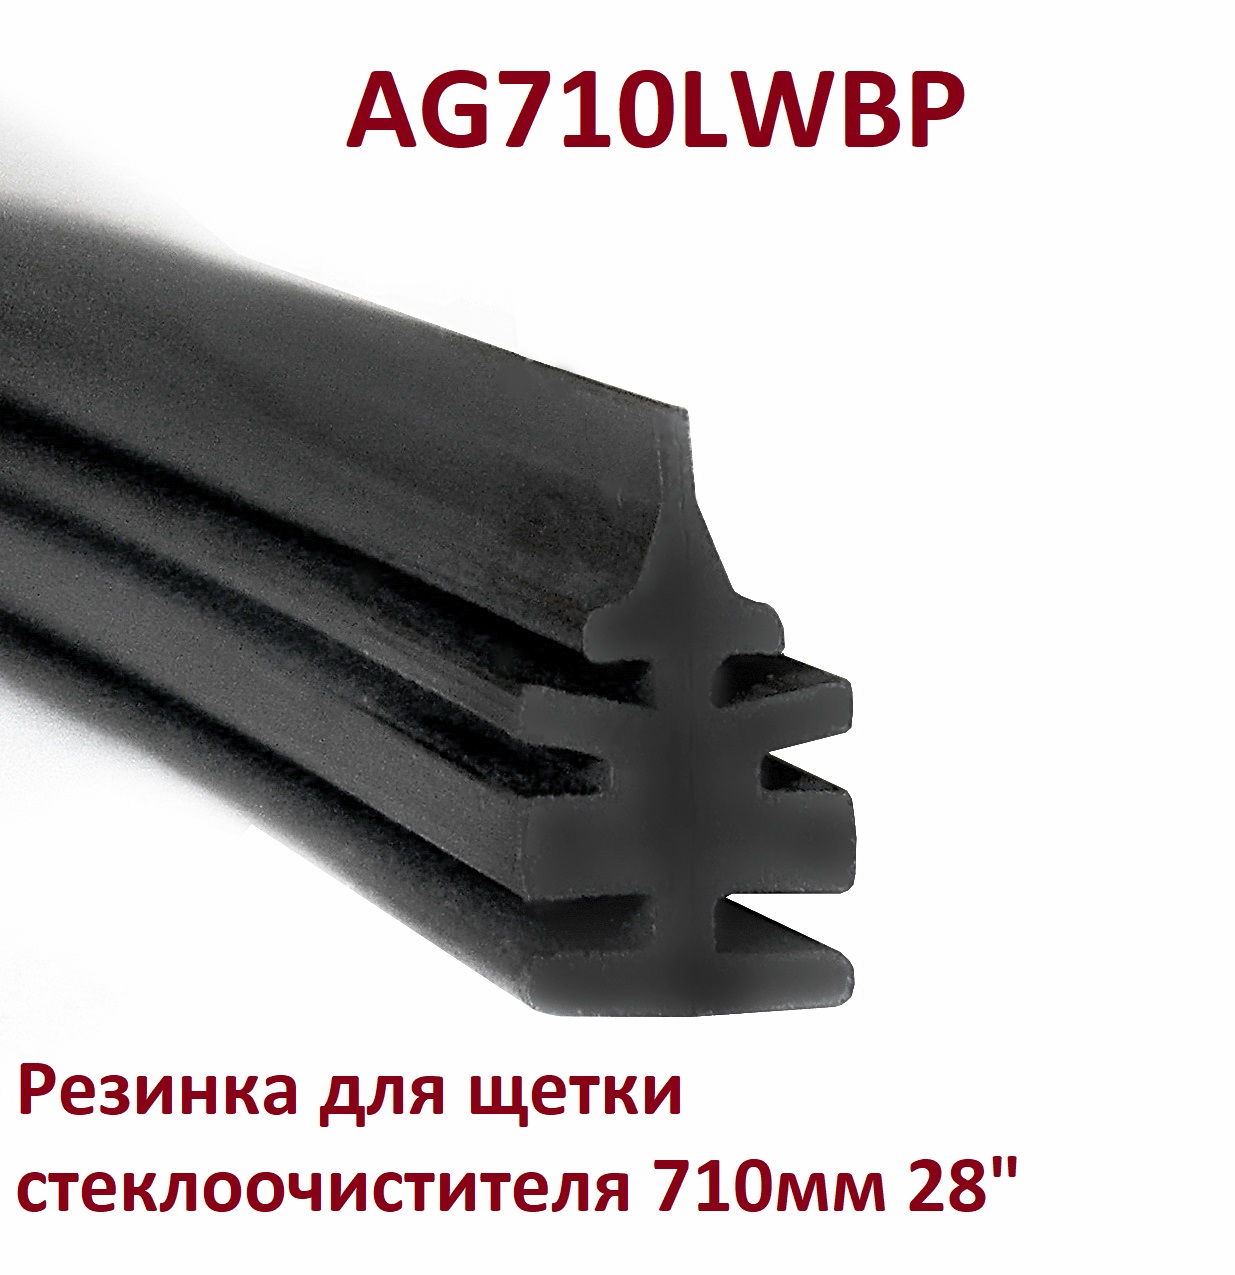 Резинка для щетки стеклоочистителя 710мм 28 - Auto-GUR AG710LWBP